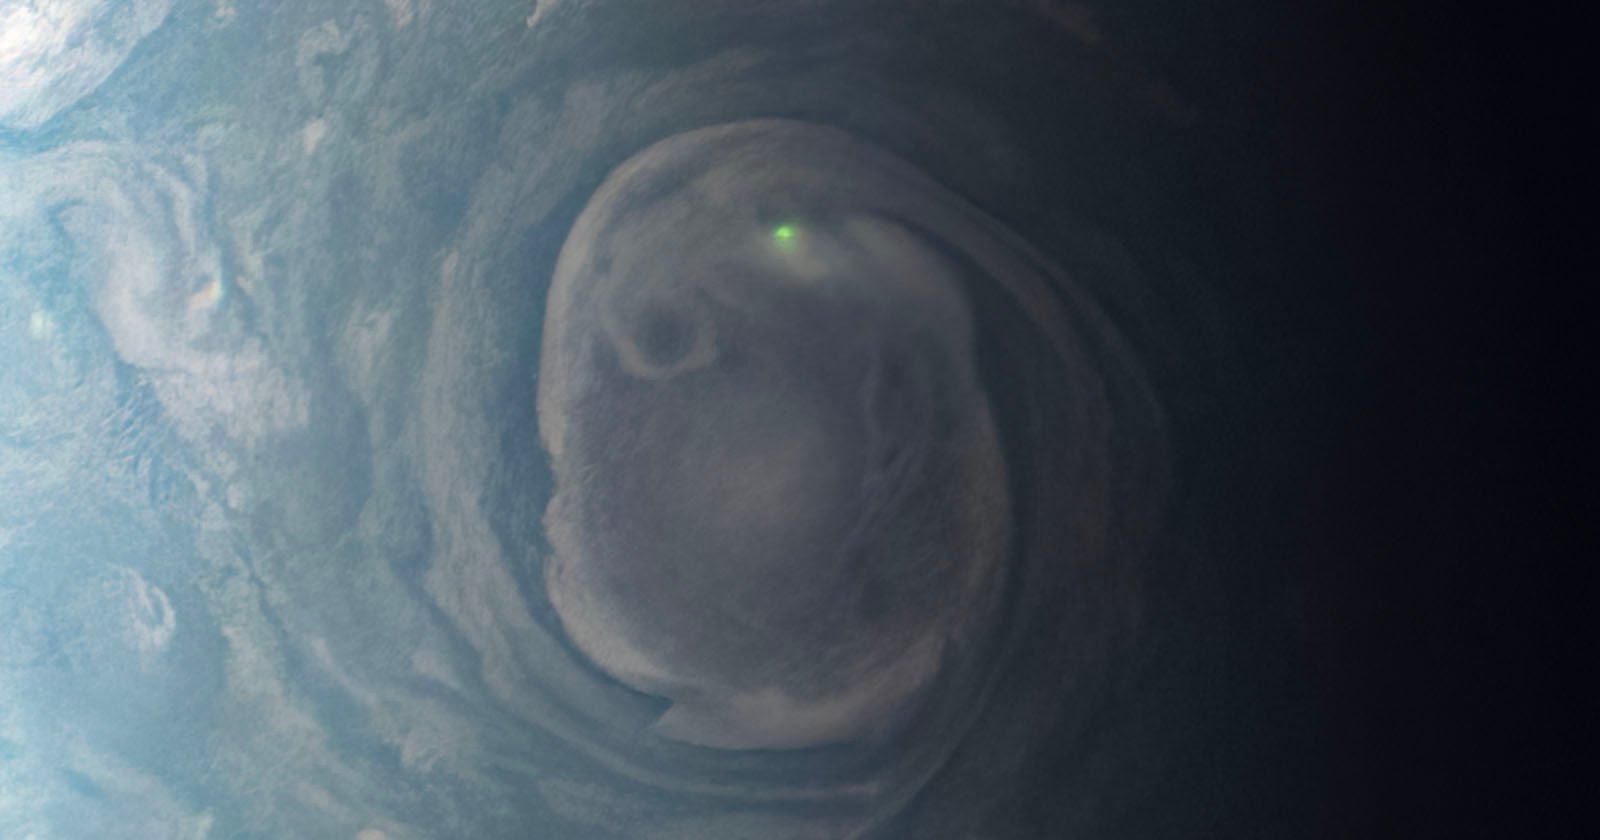 NASA Probe Captures Green Lightning Bolt on Jupiter